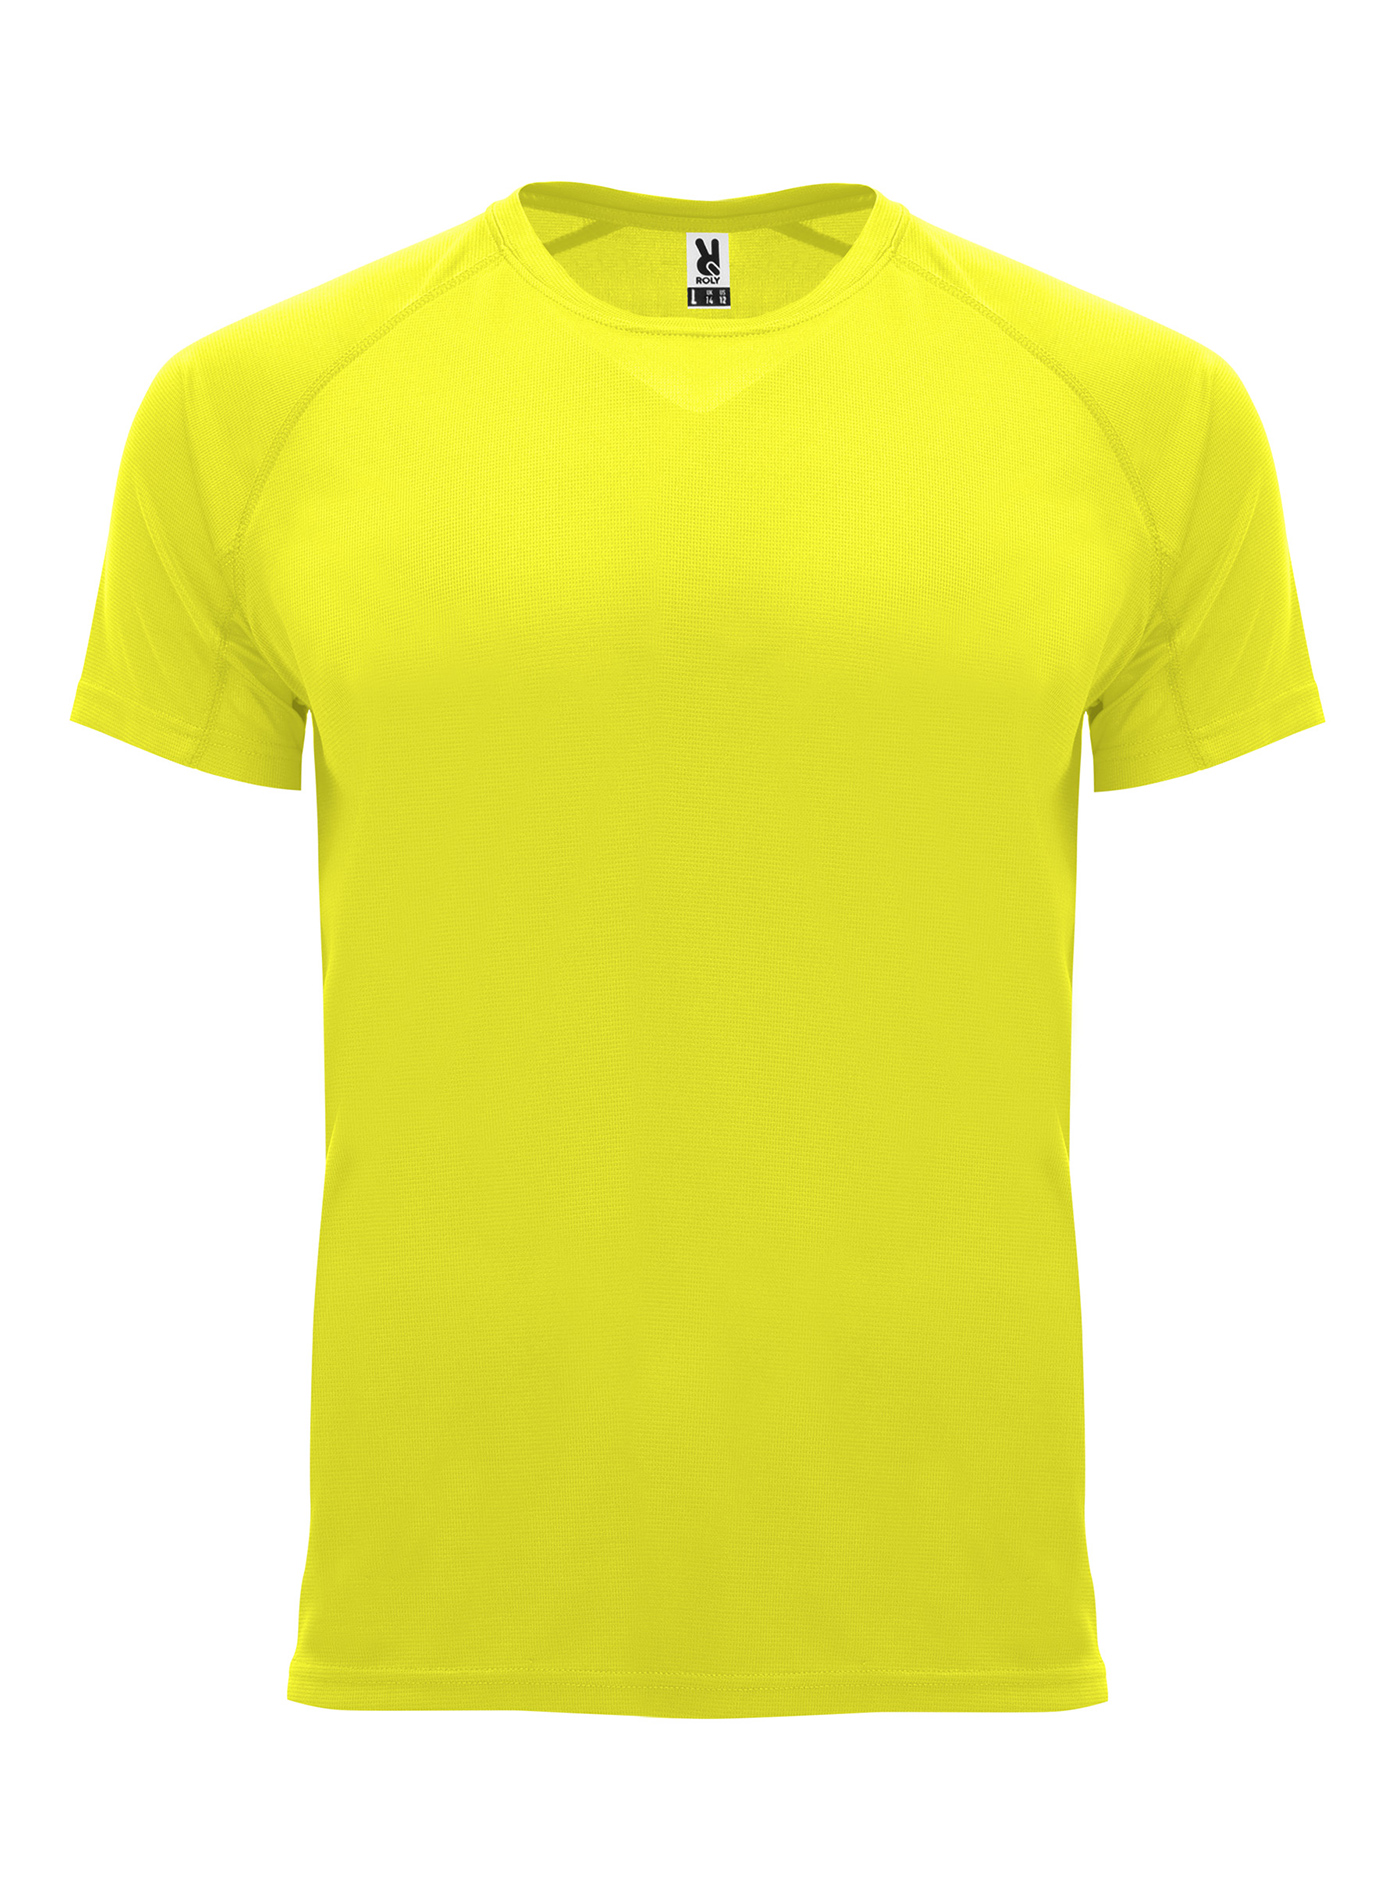 Pánské sportovní tričko Roly Bahrain - Neonově žlutá S